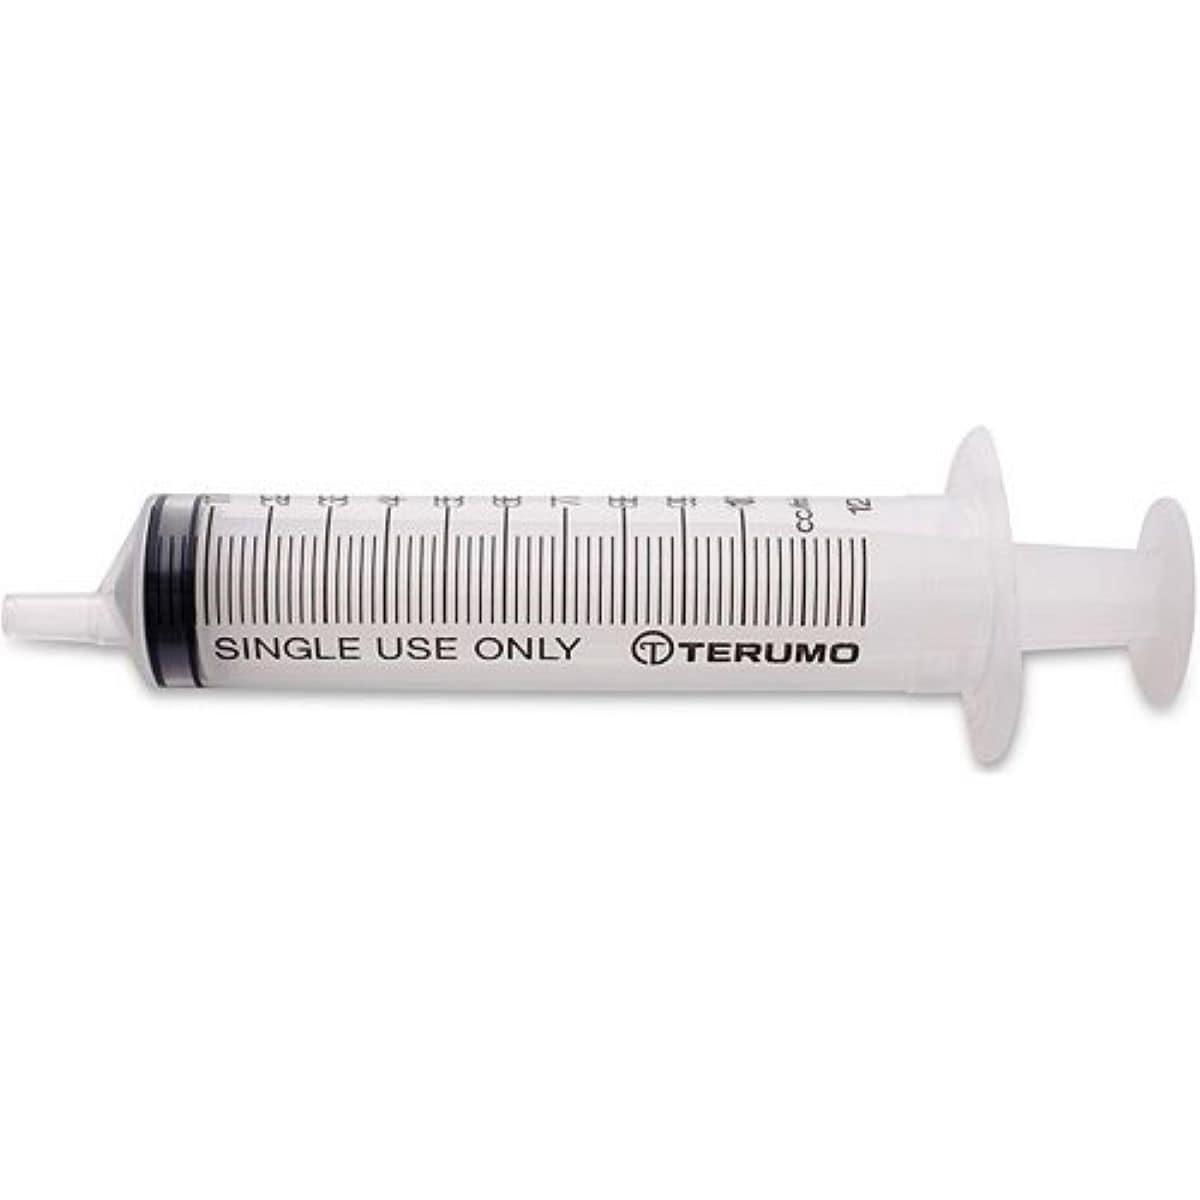 Syringe Plastic No Needle 10ml 100 Pack